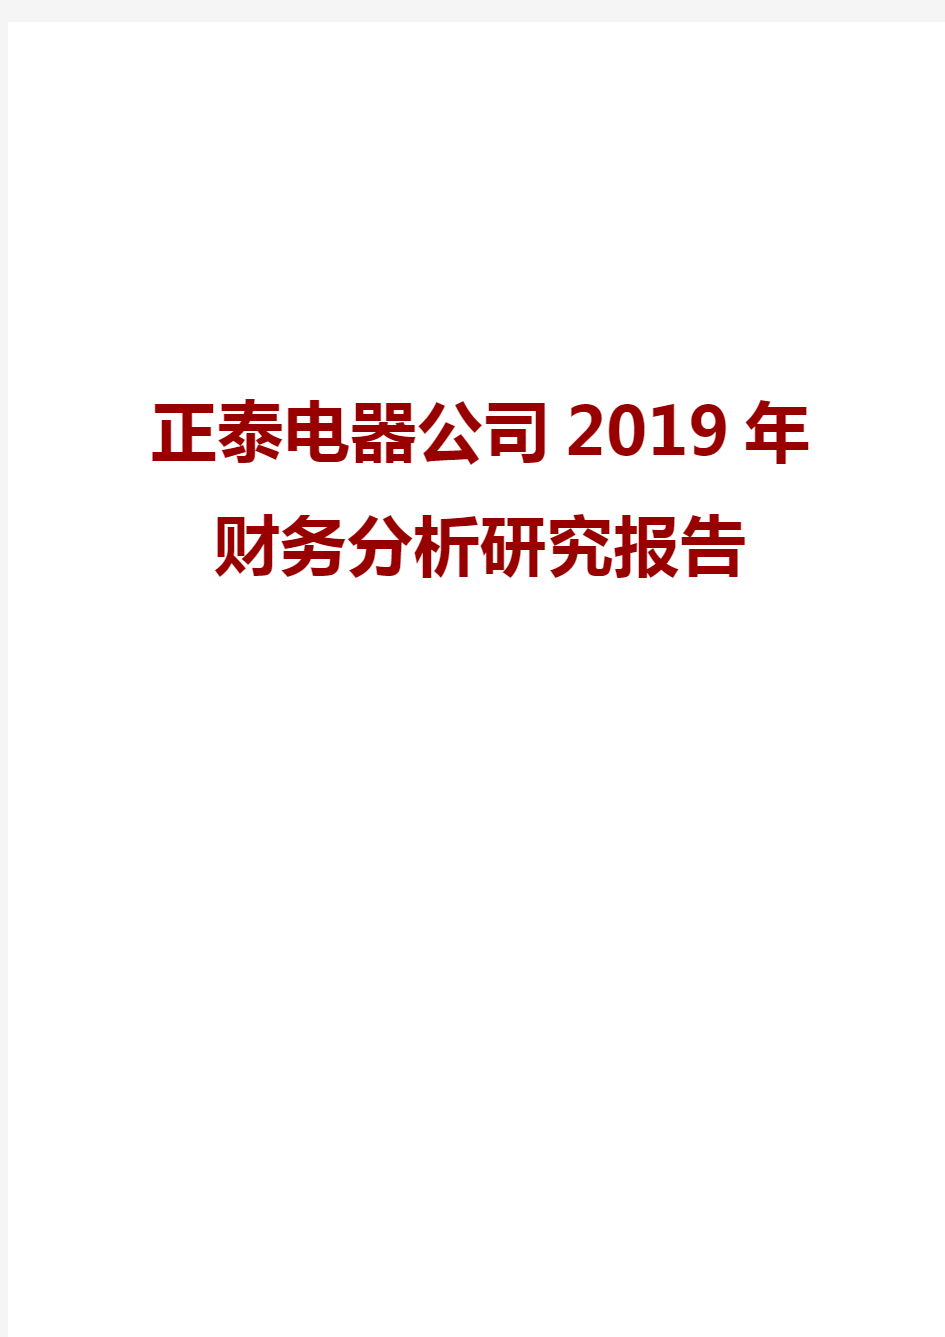 正泰电器公司2019年财务分析研究报告